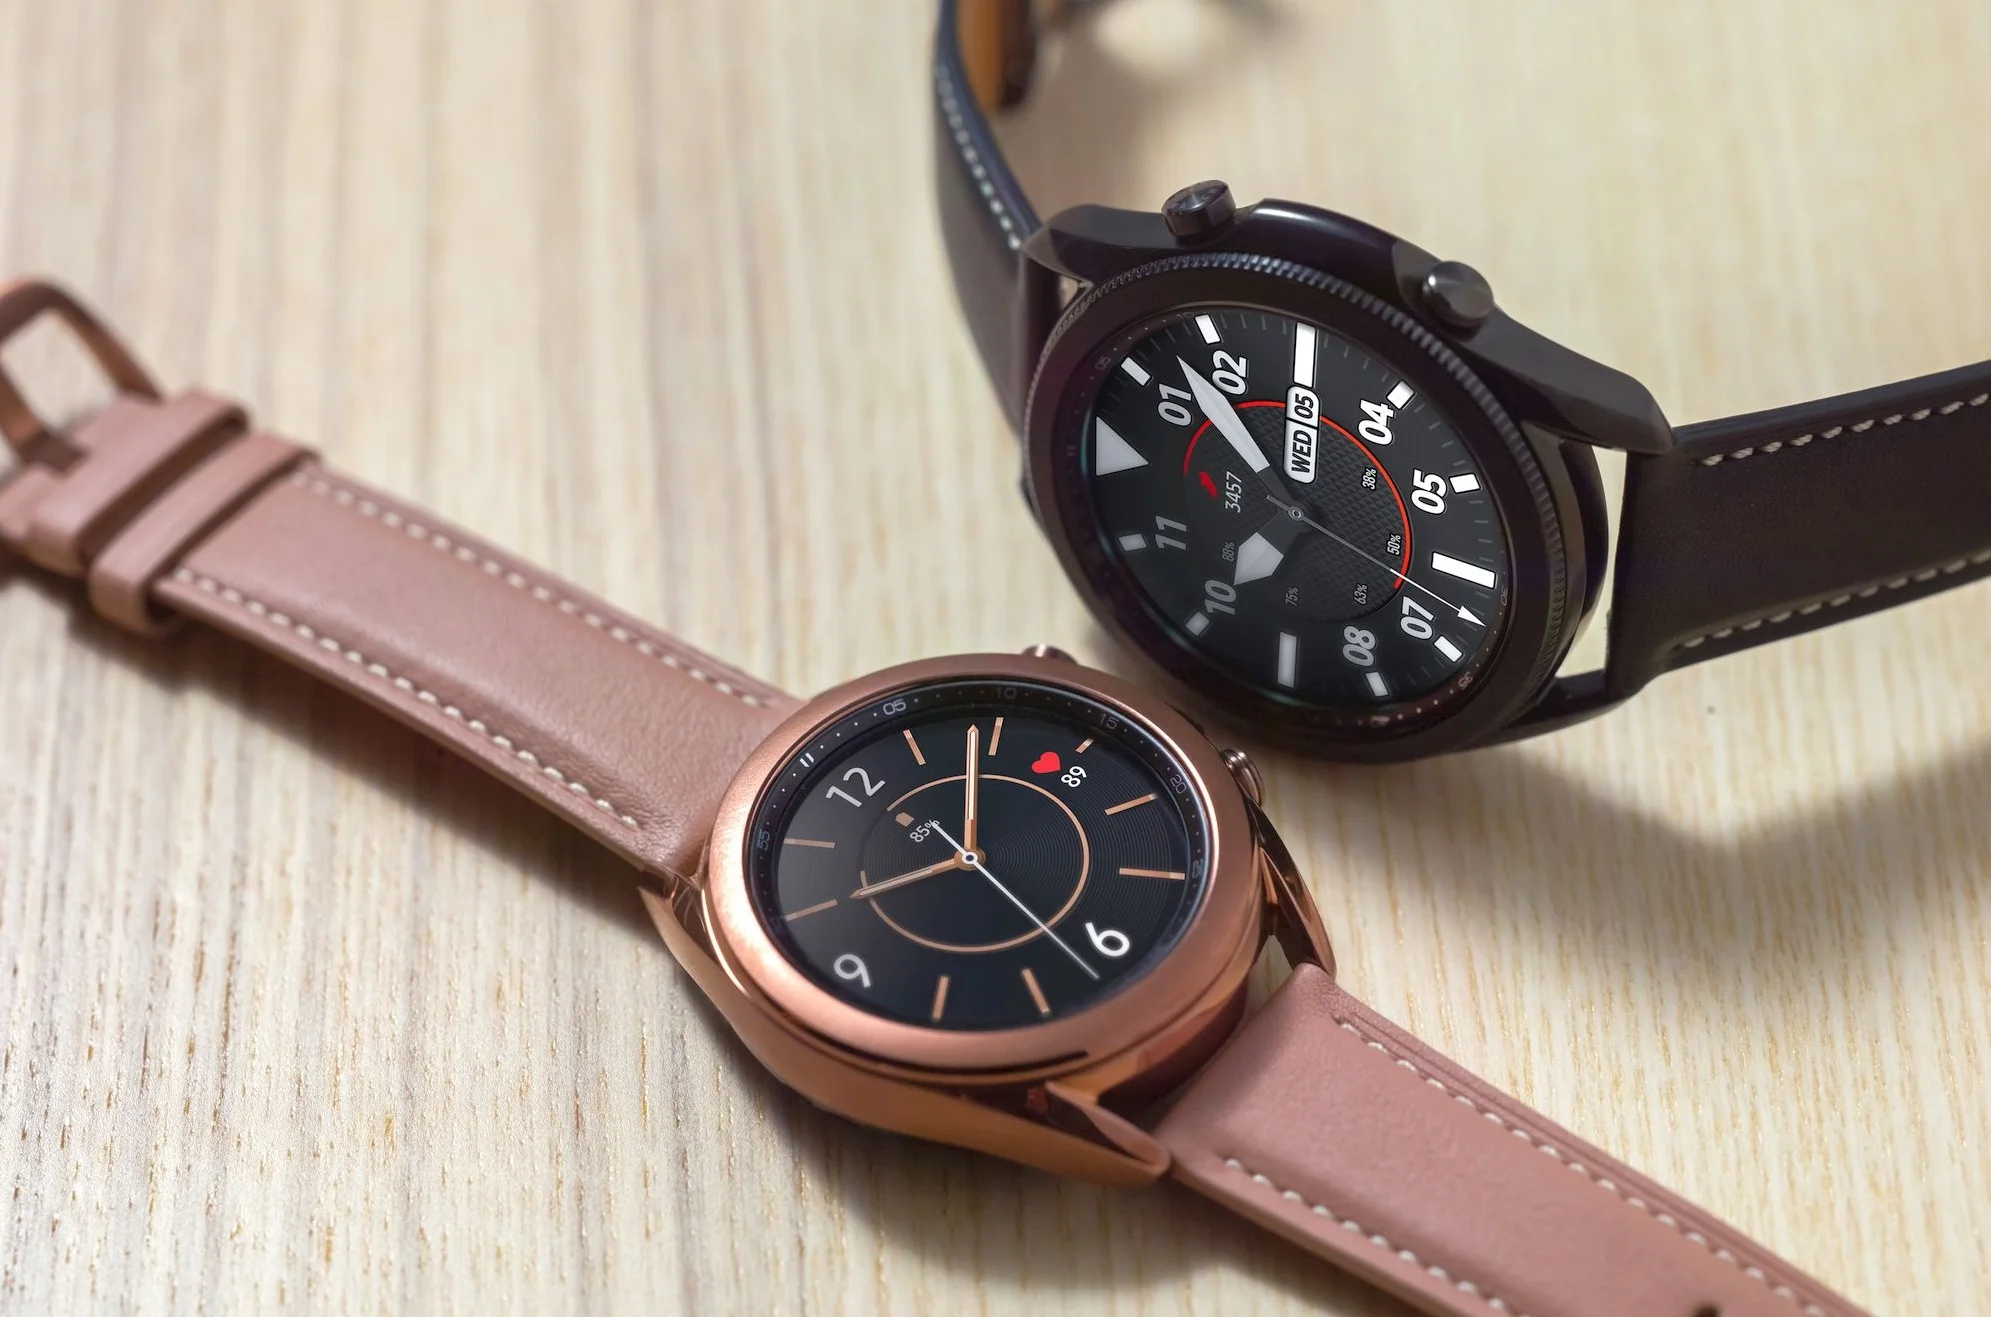 Представлены смарт-часы Samsung Galaxy Watch 3 — датчик ЭКГ, полная защита и беспроводная зарядка - фото 1